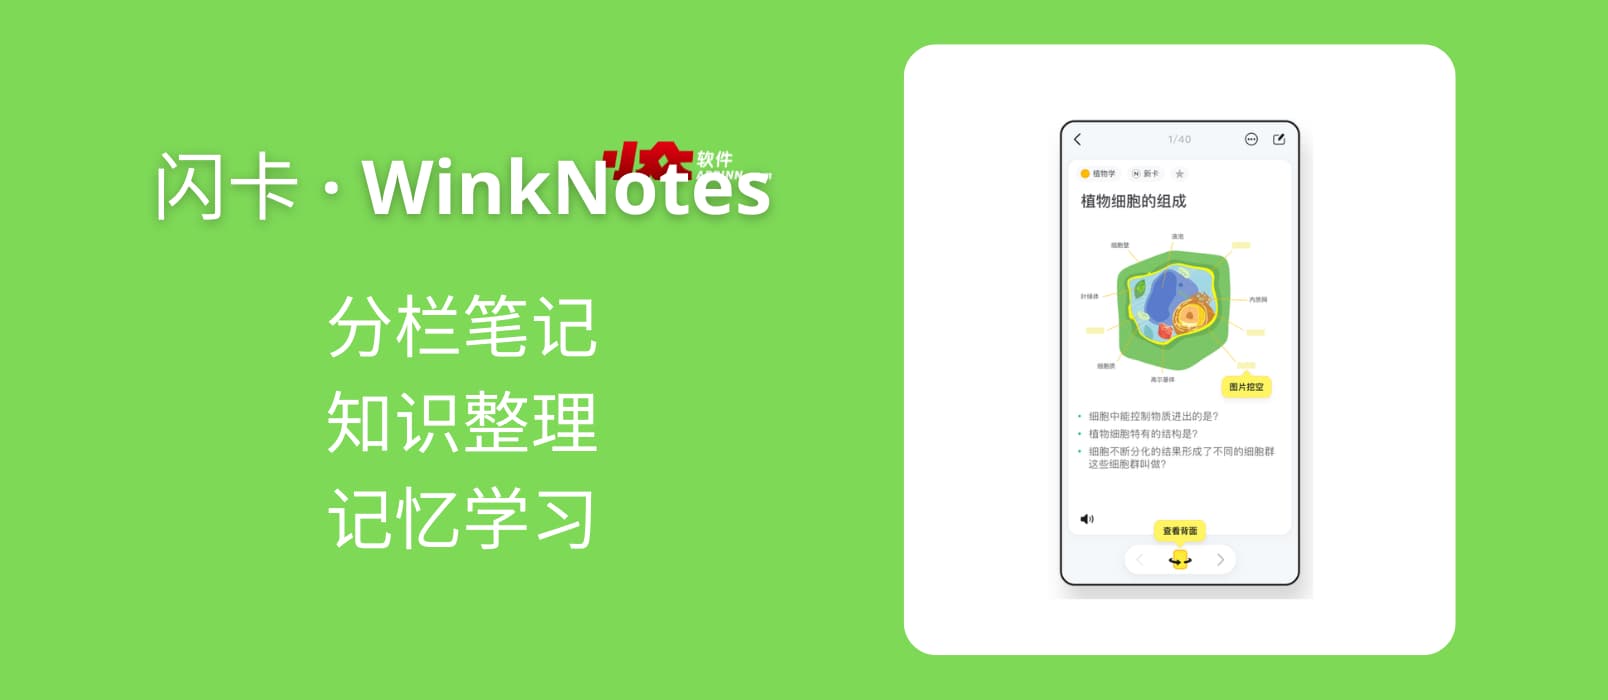 闪卡 · WinkNotes - 独特分栏笔记、知识整理、记忆学习[macOS/iOS]